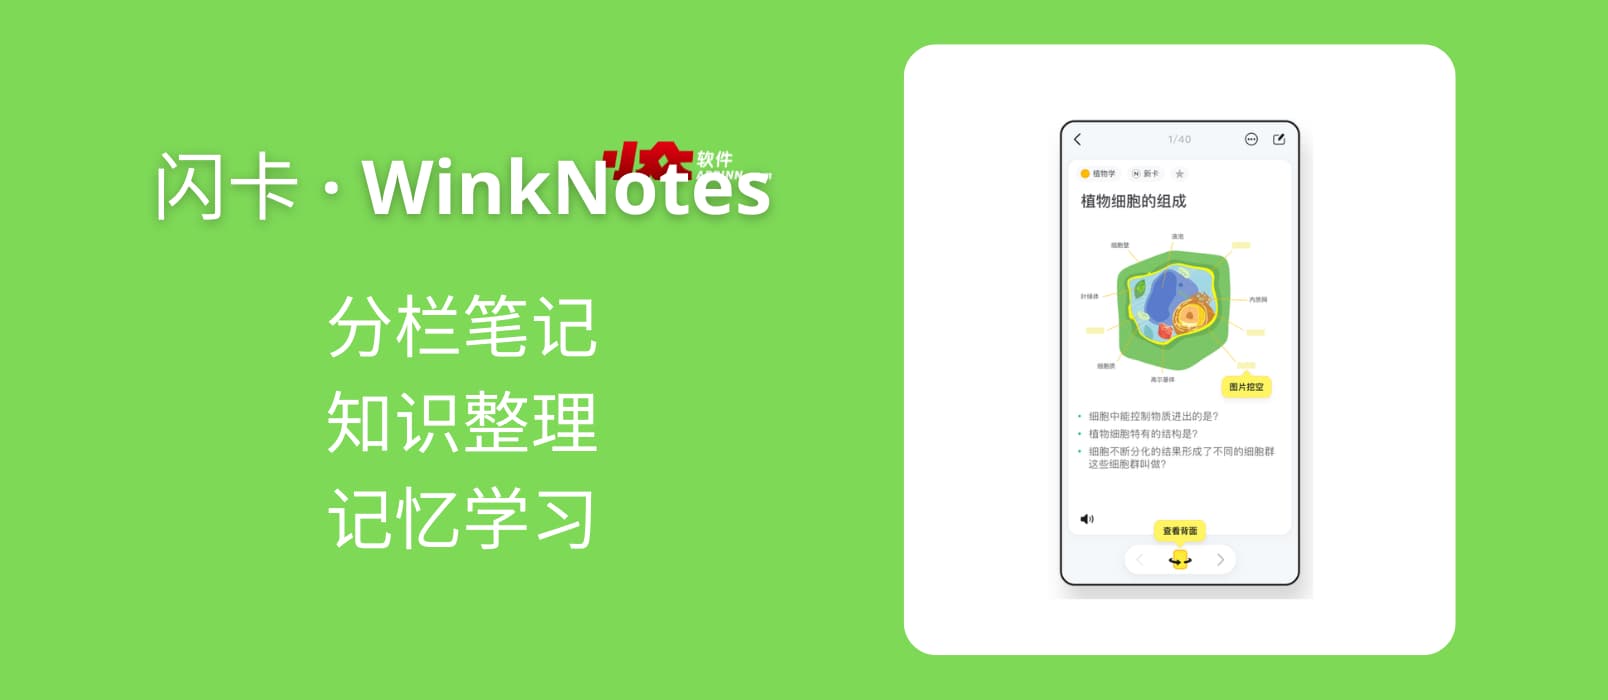 闪卡 · WinkNotes - 独特分栏笔记、知识整理、记忆学习[macOS/iOS]